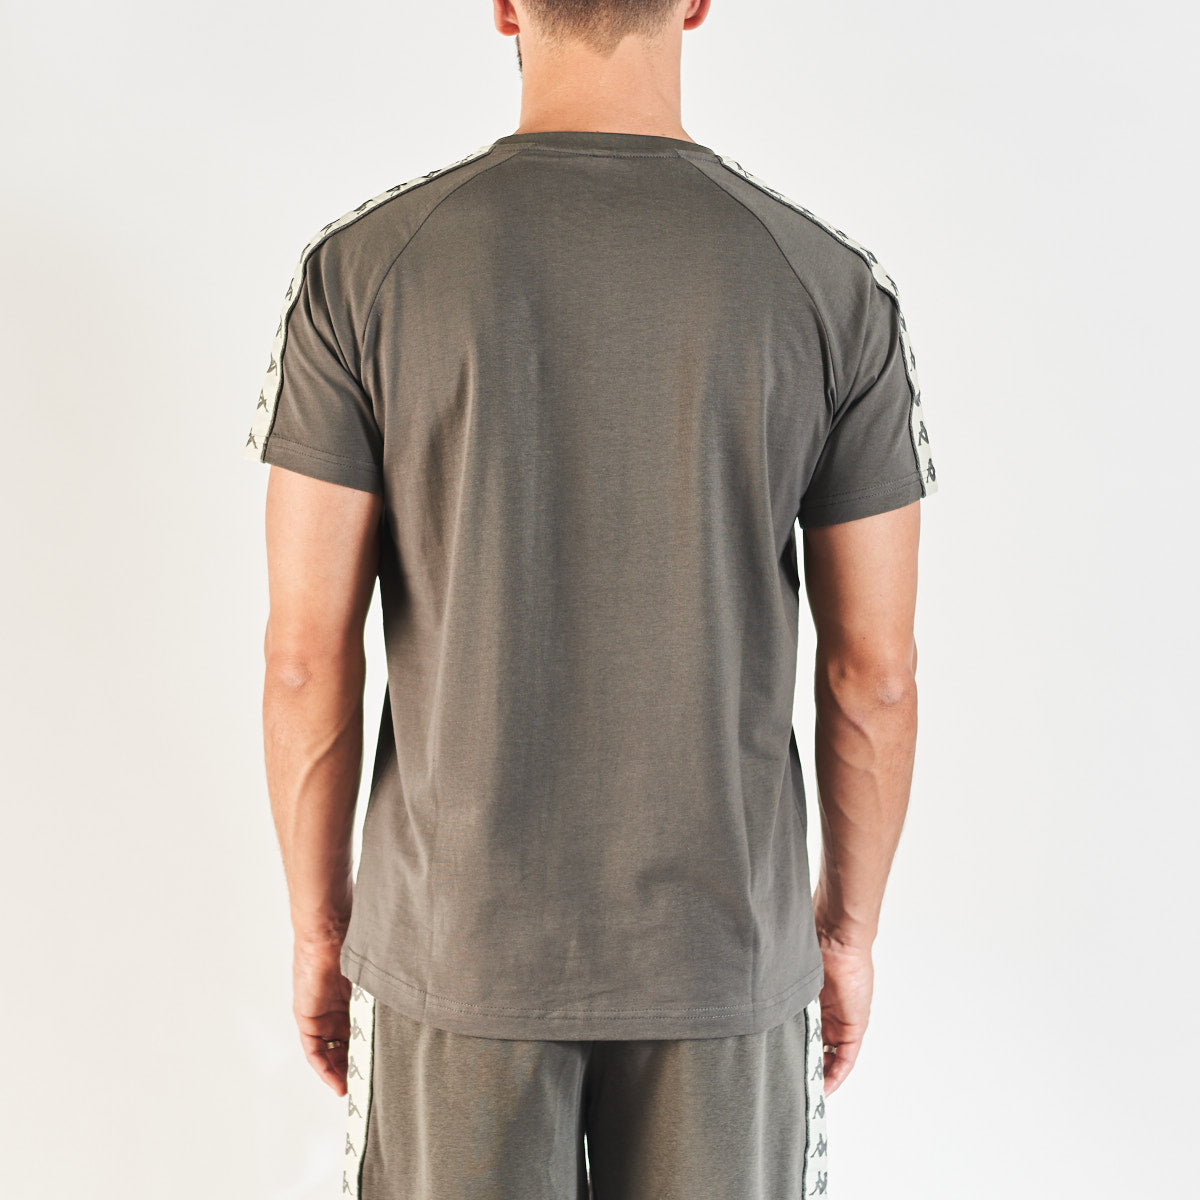 T-shirt Coen Authentic Gris Homme - Image 3